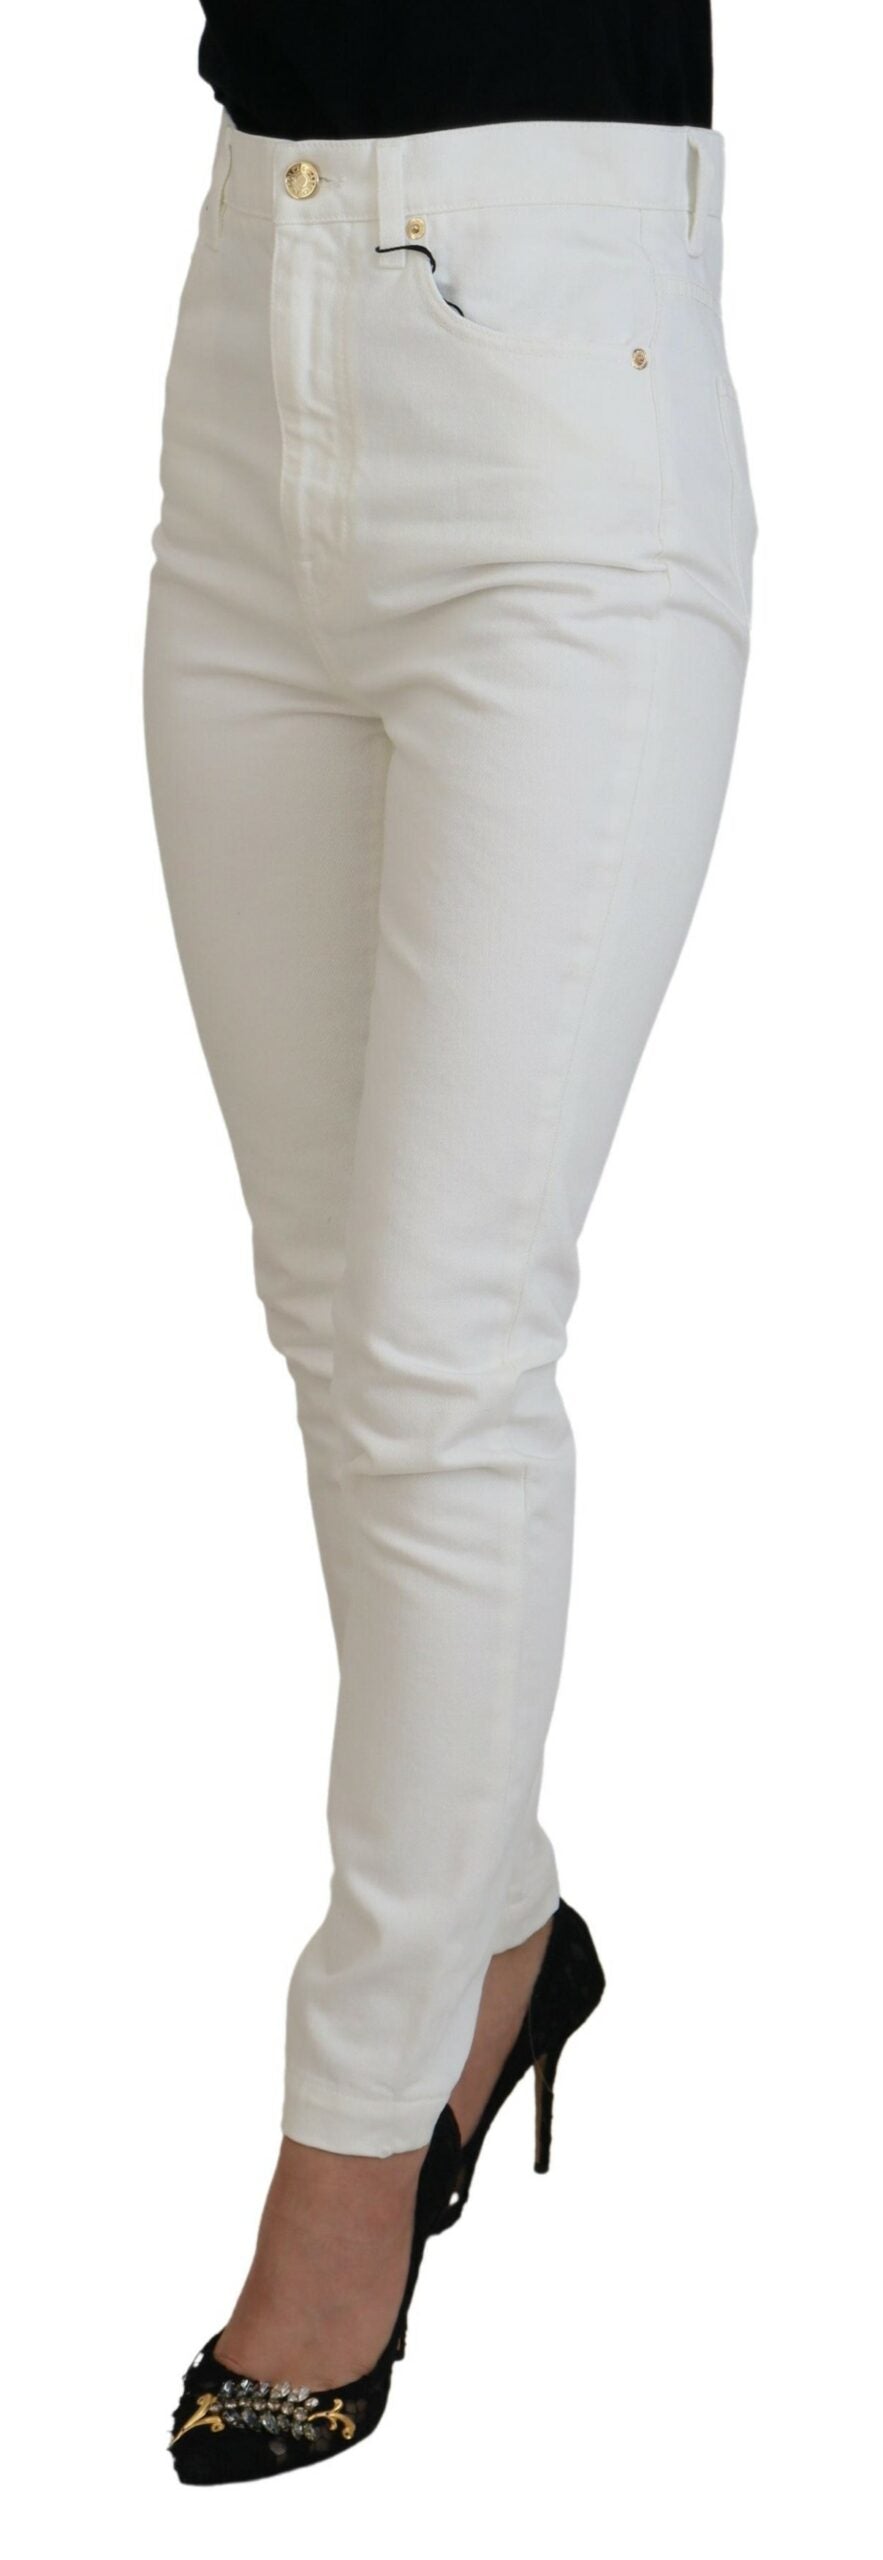 Dolce & Gabbana Svelte High Waist Slim Jeans in Off White